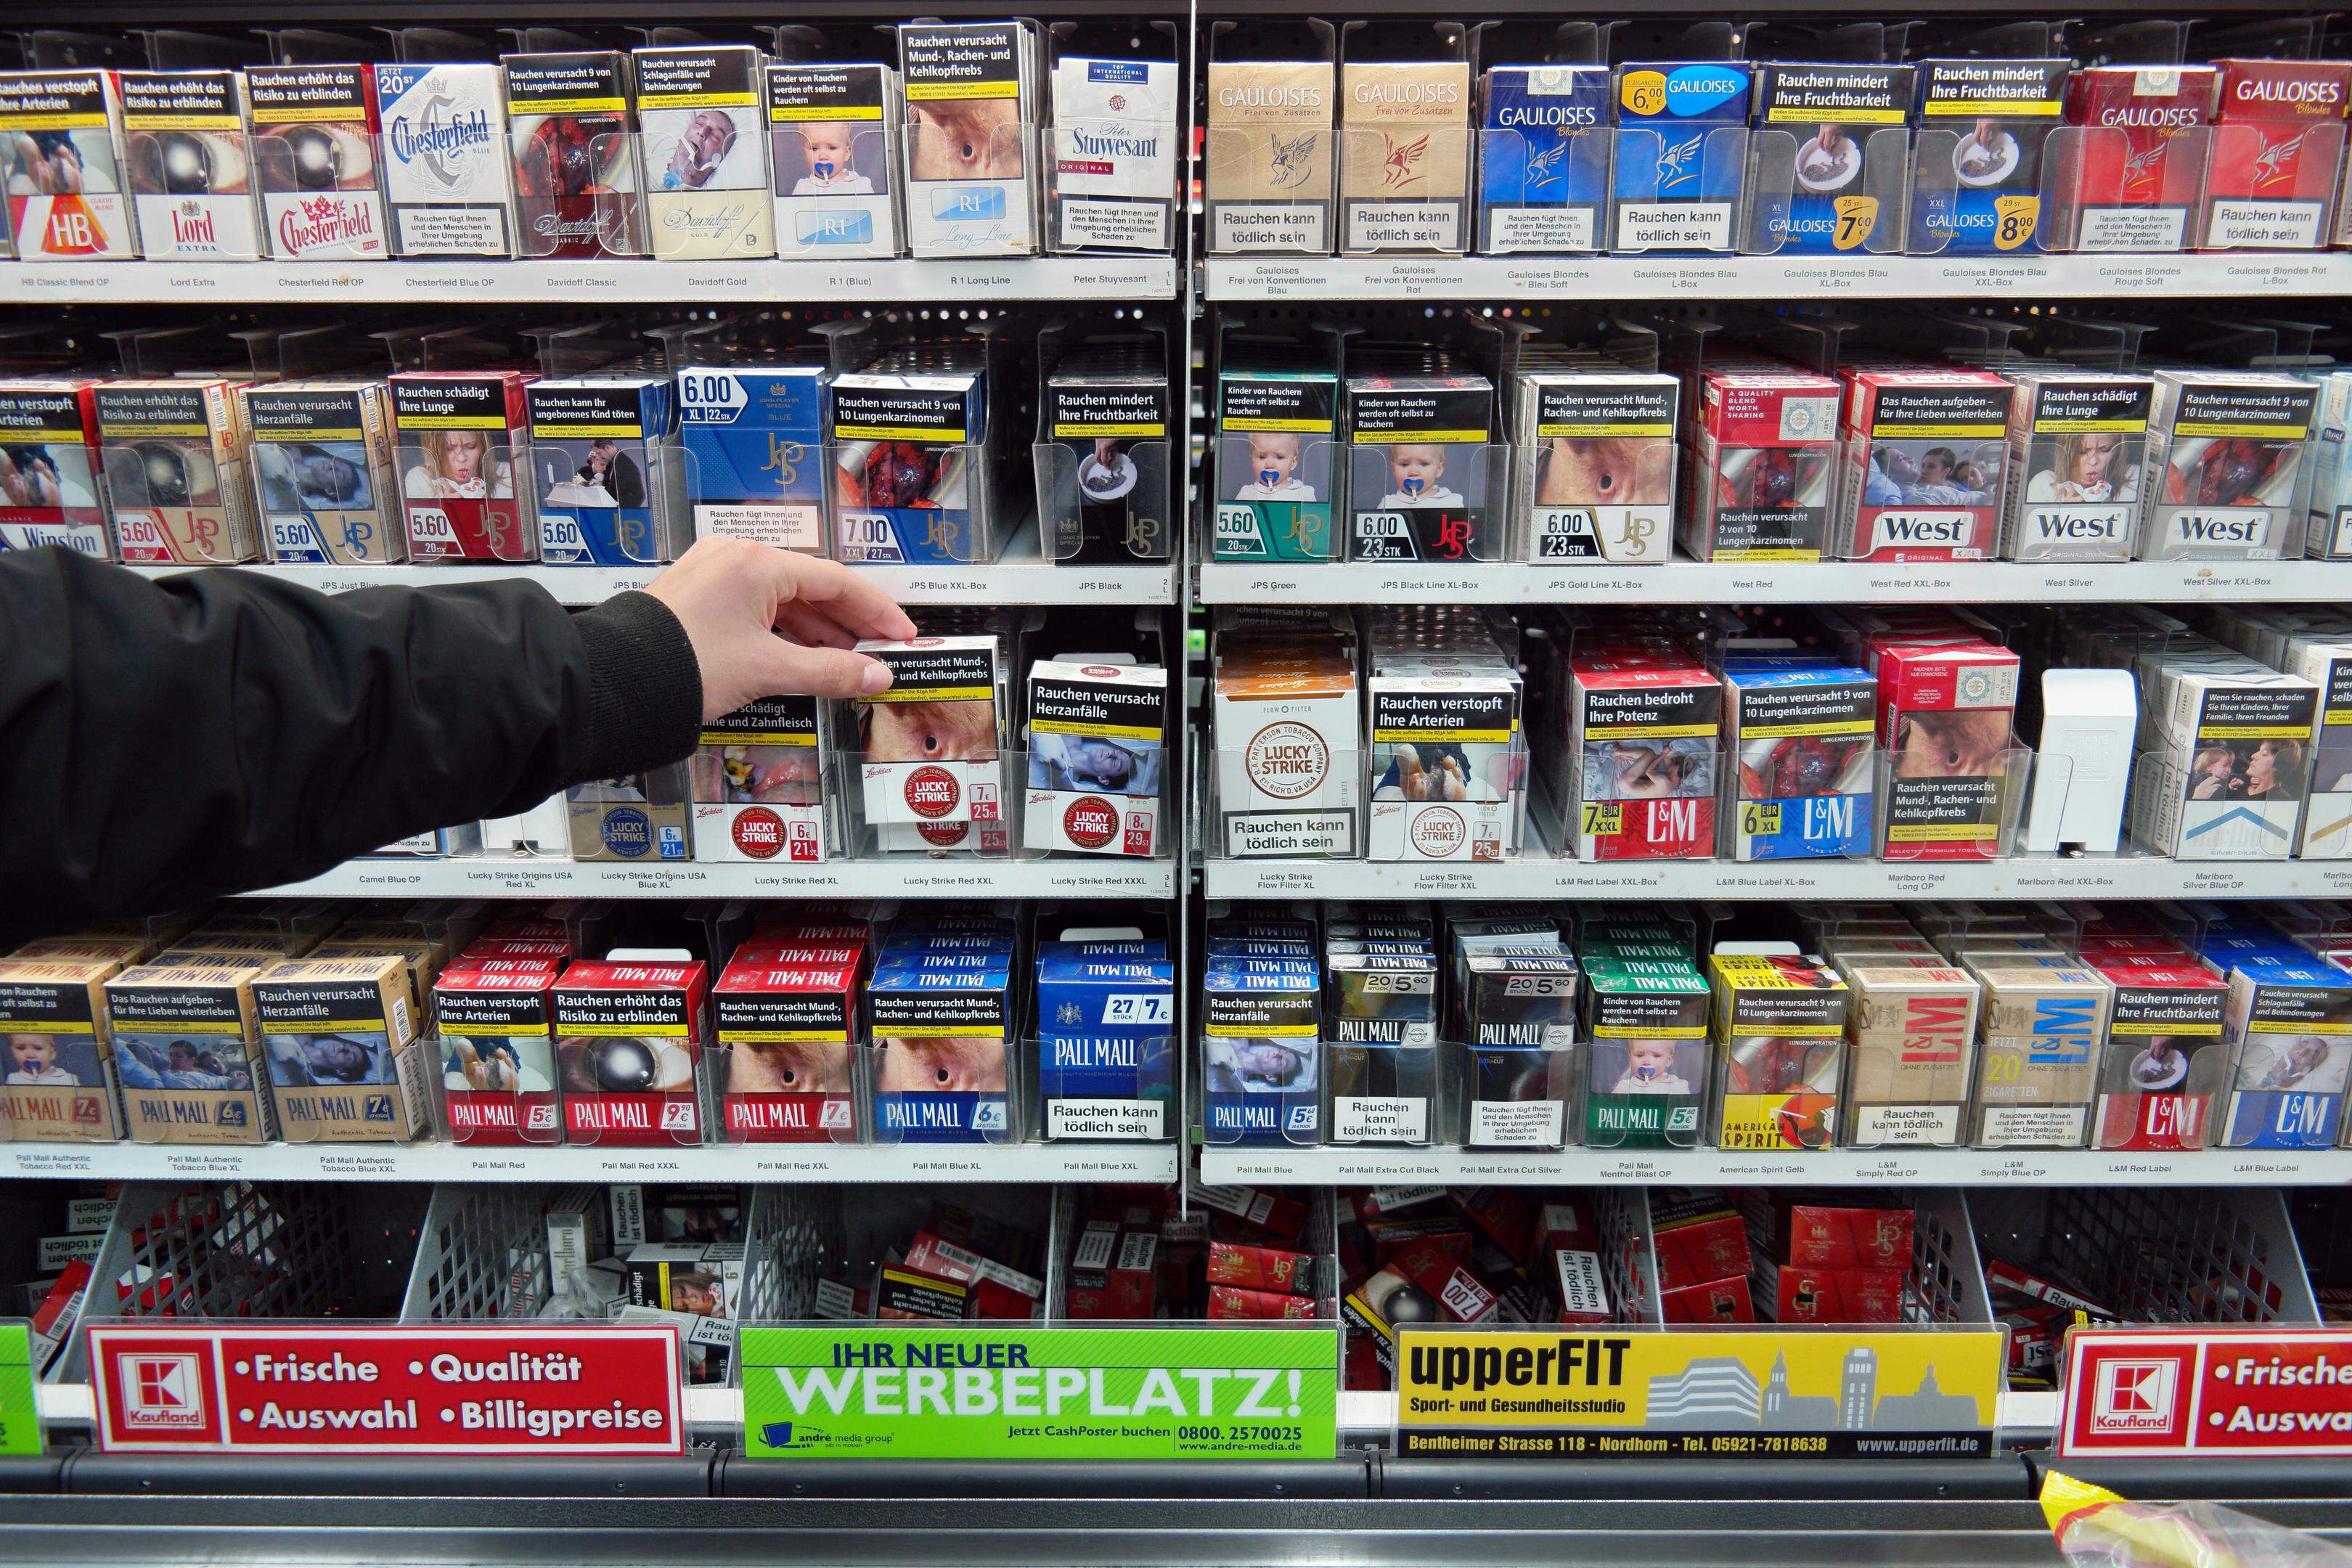 Le prix du tabac va augmenter au Luxembourg